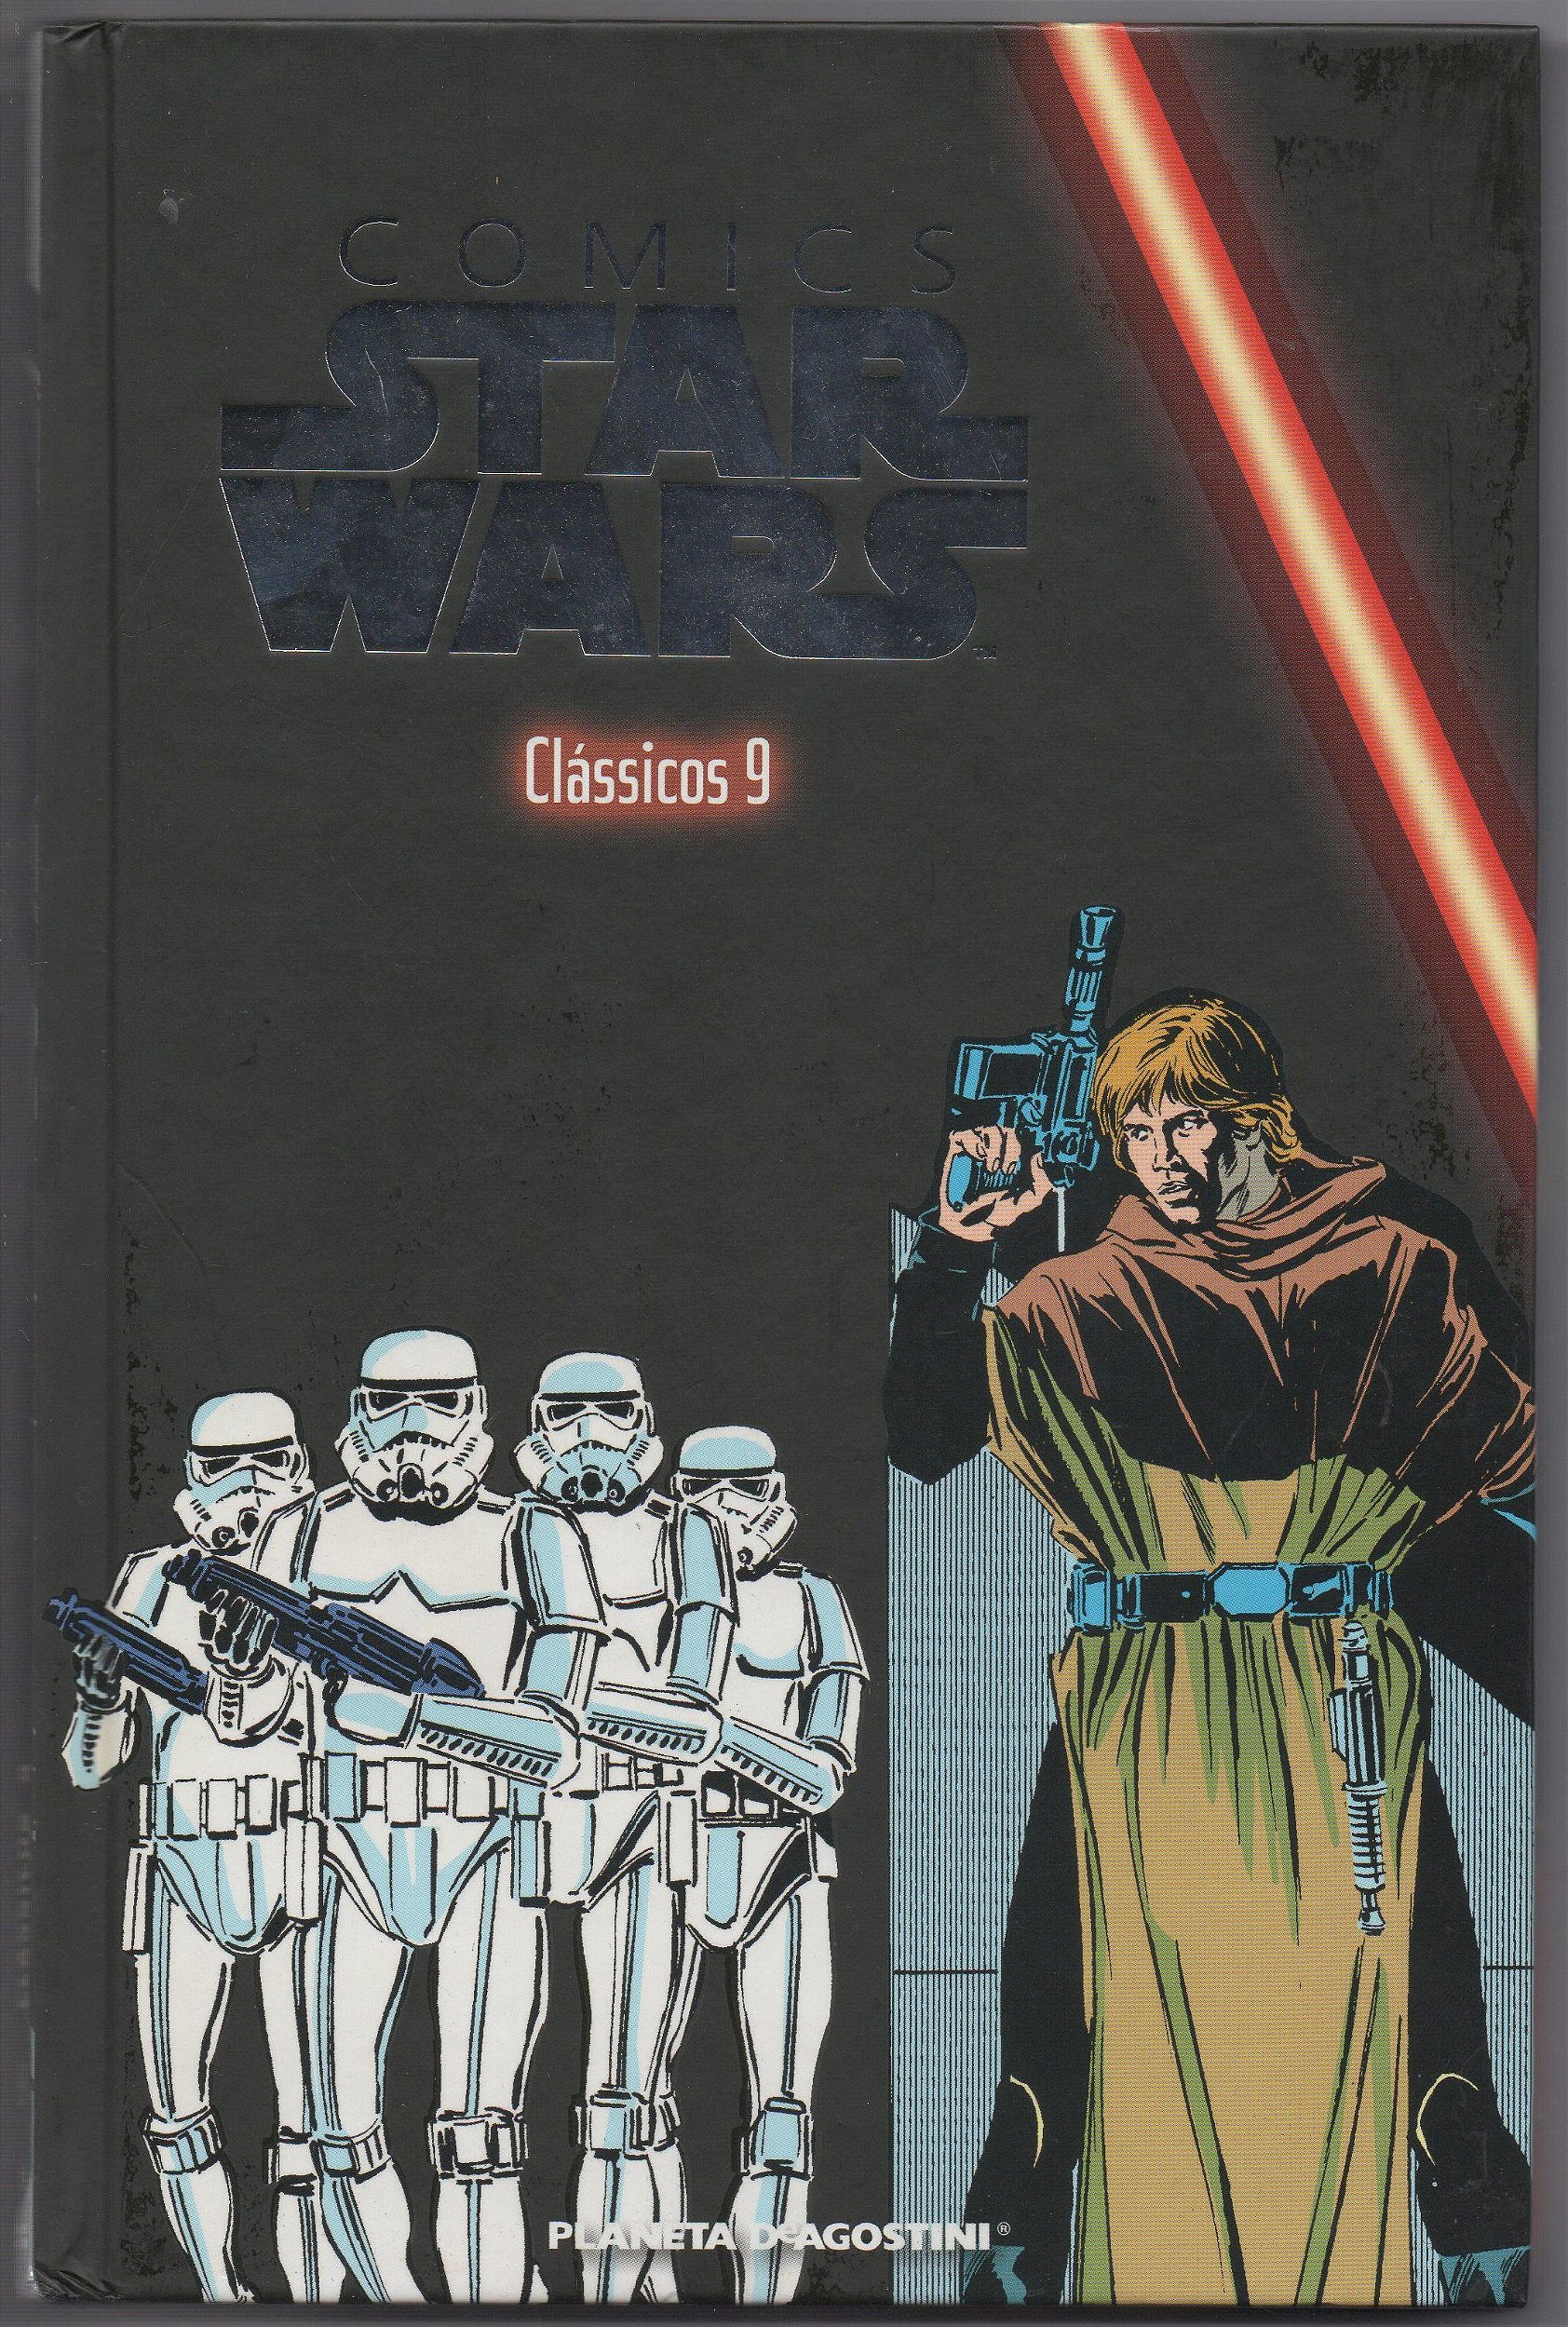 Confira a lista da coleção Comics Star Wars!